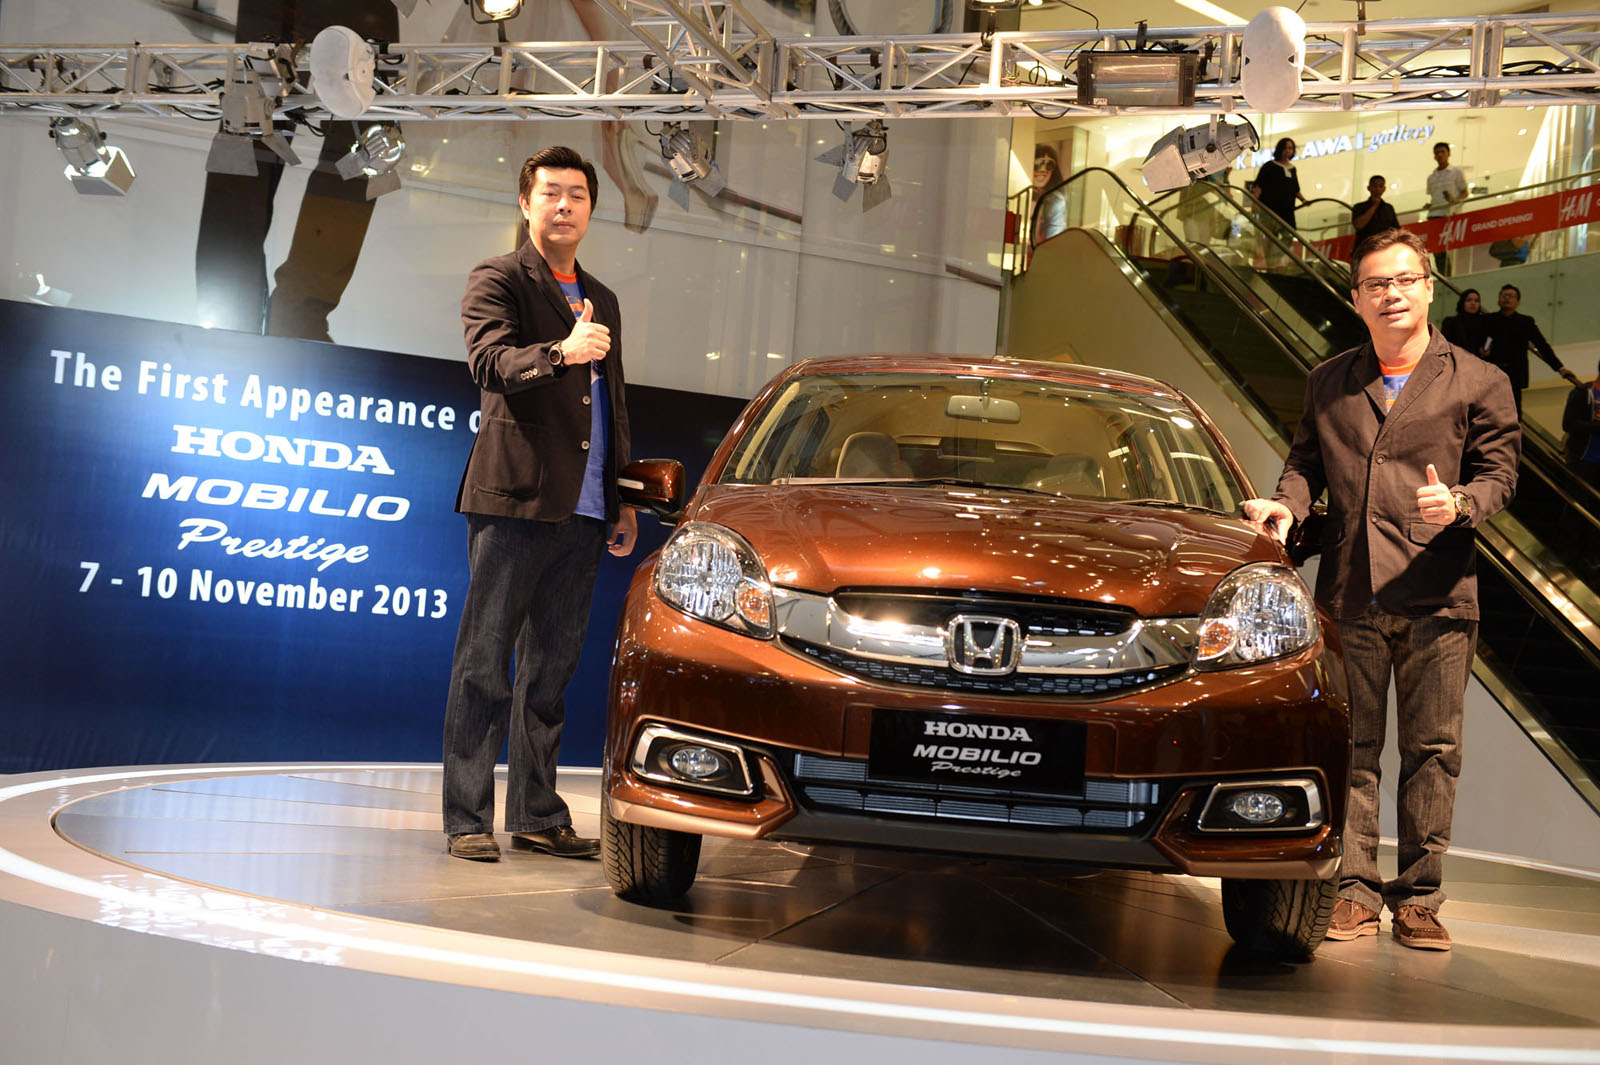 Wah Honda Lengkapi Varian Dengan Mobilio Prestige Raju Febrians